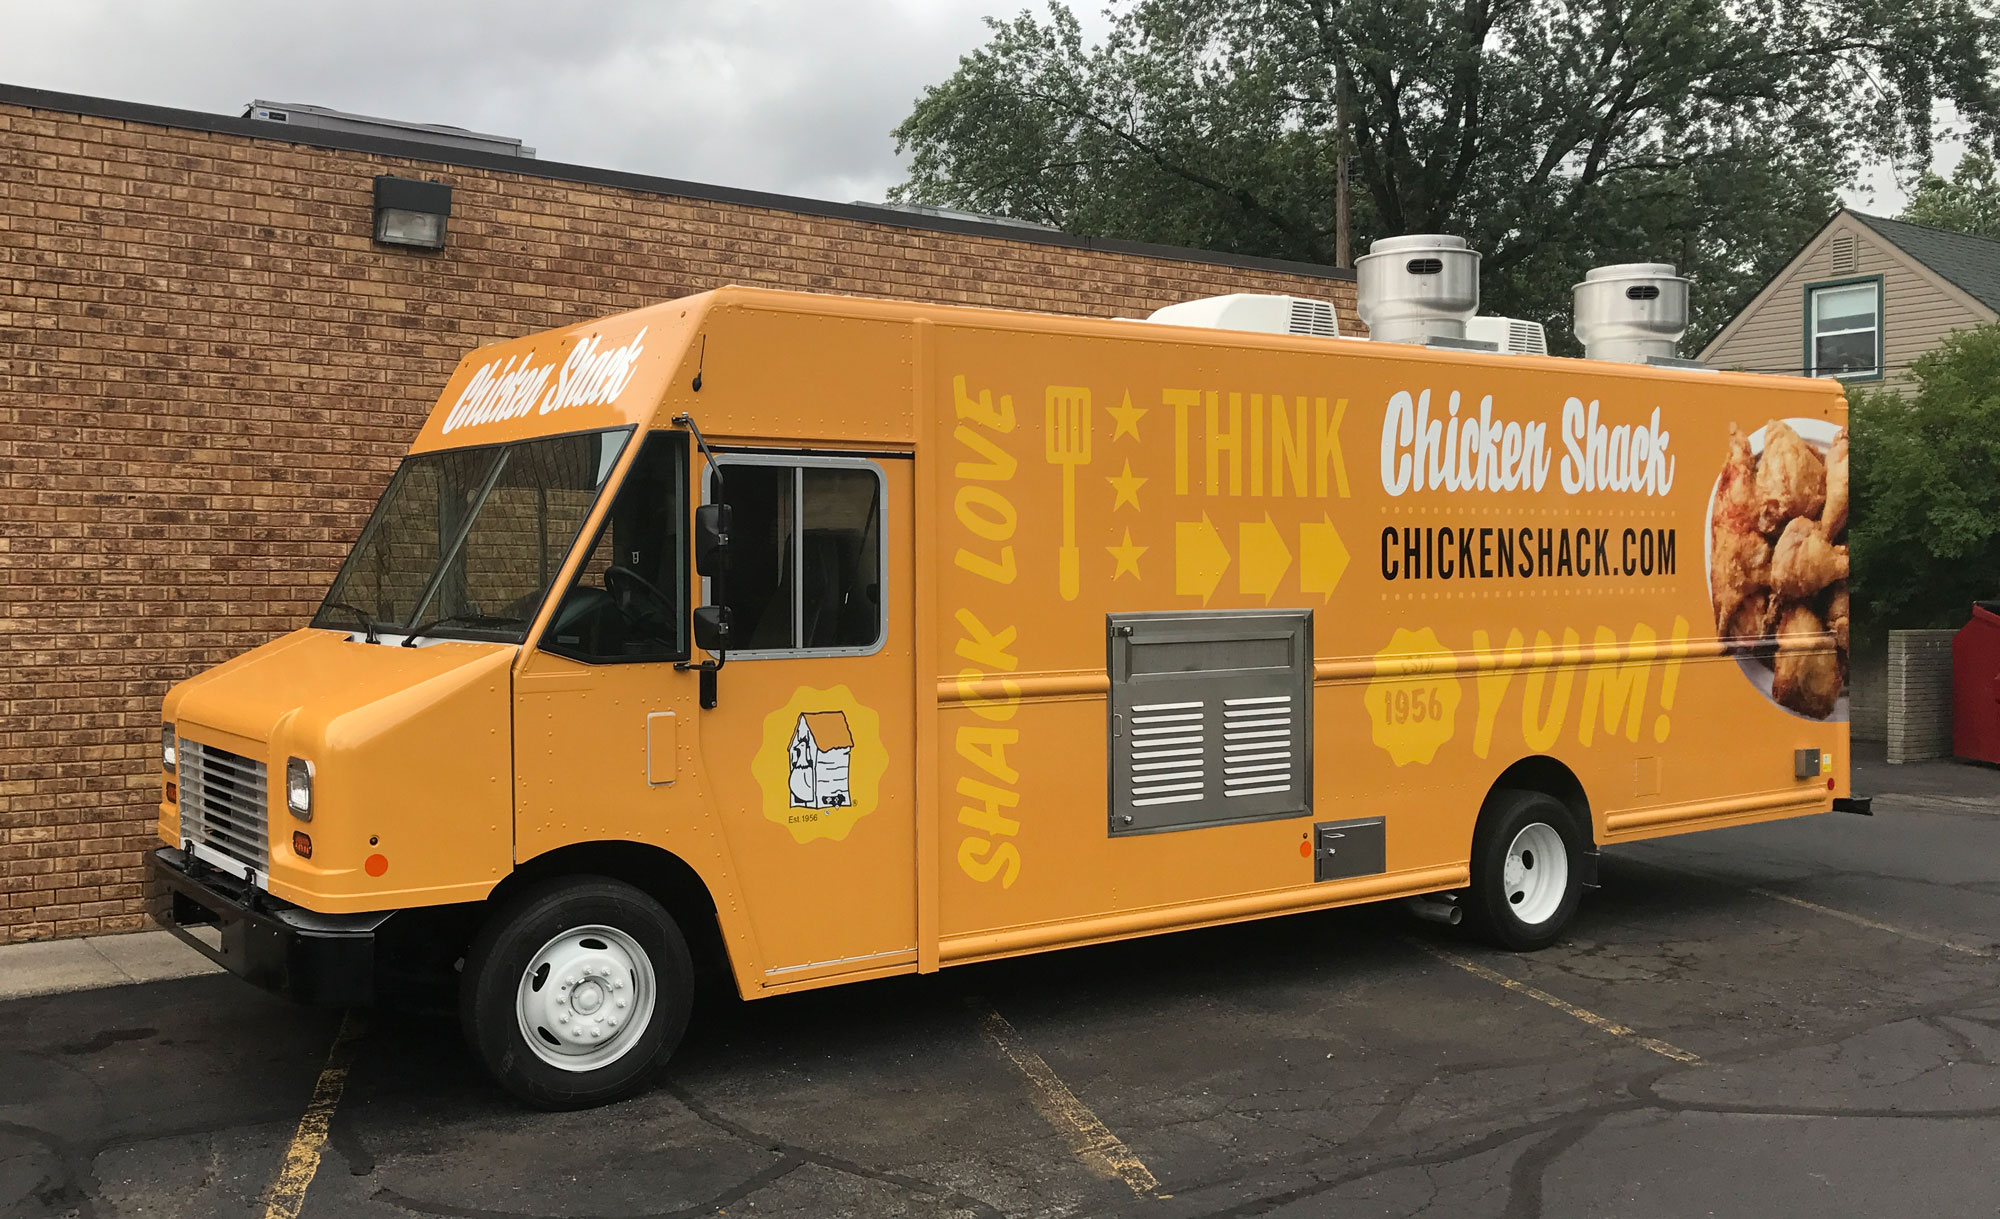 Chick'n lick'n food truck